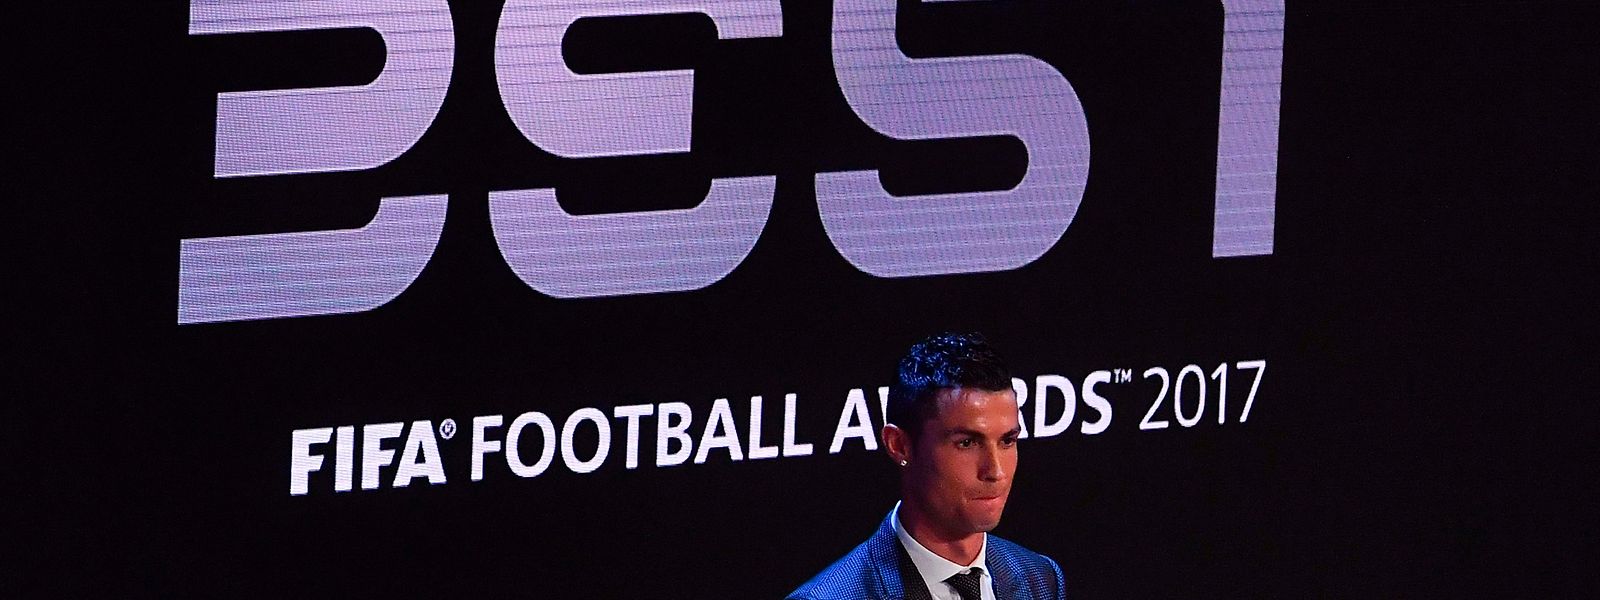 Cristiano Ronaldo kann im Idealfall zwei Mal im Jahr eine wichtige Auszeichnung erhalten.